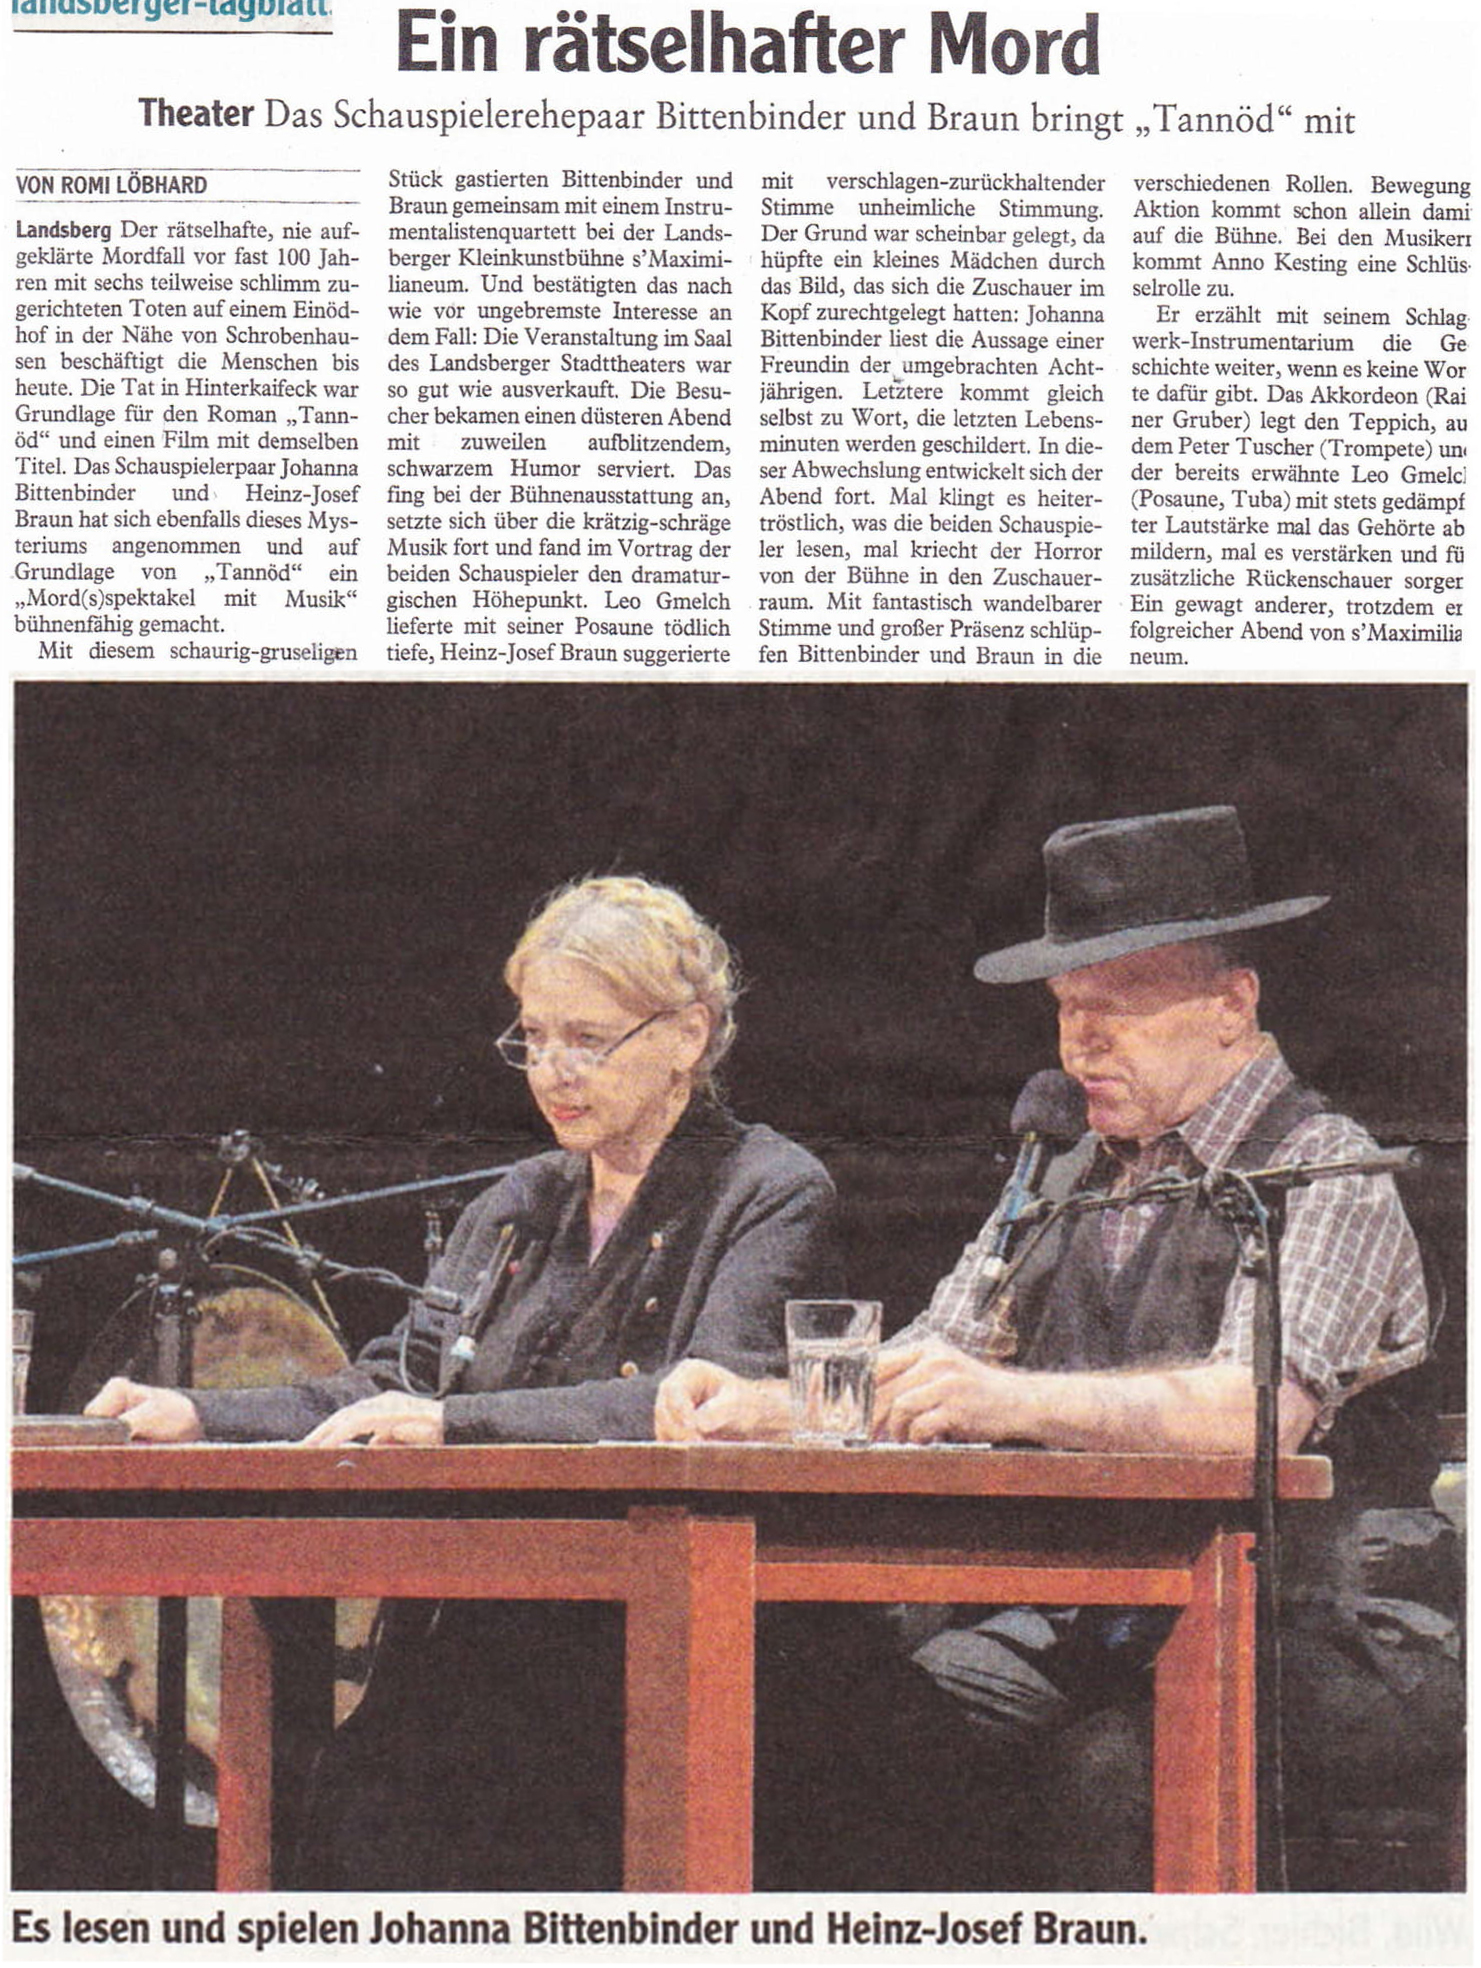 Bild der Kritik aus dem Landsberger Tagblatt vom 17.04.2019